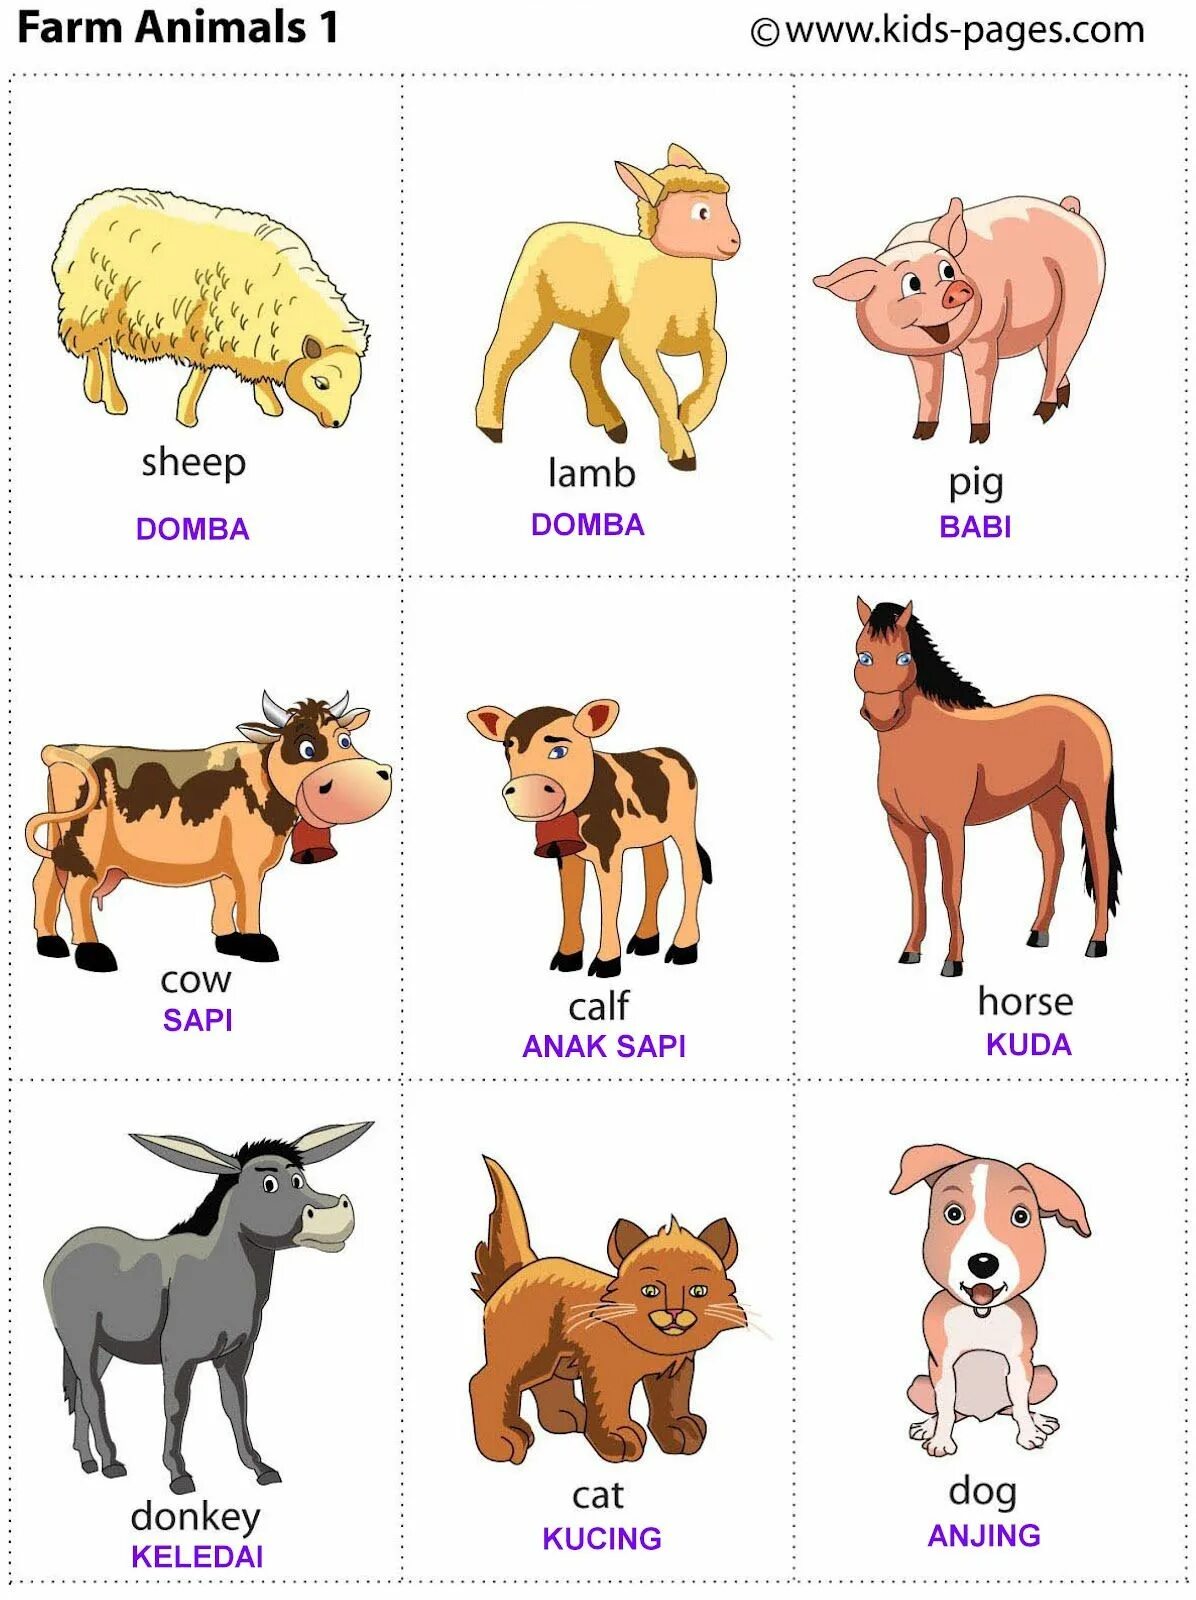 Карточки домашние питомцы для детей на английском языке. Домашних животных для детей. Животные на английском для детей. Домашние животные на английском для детей.